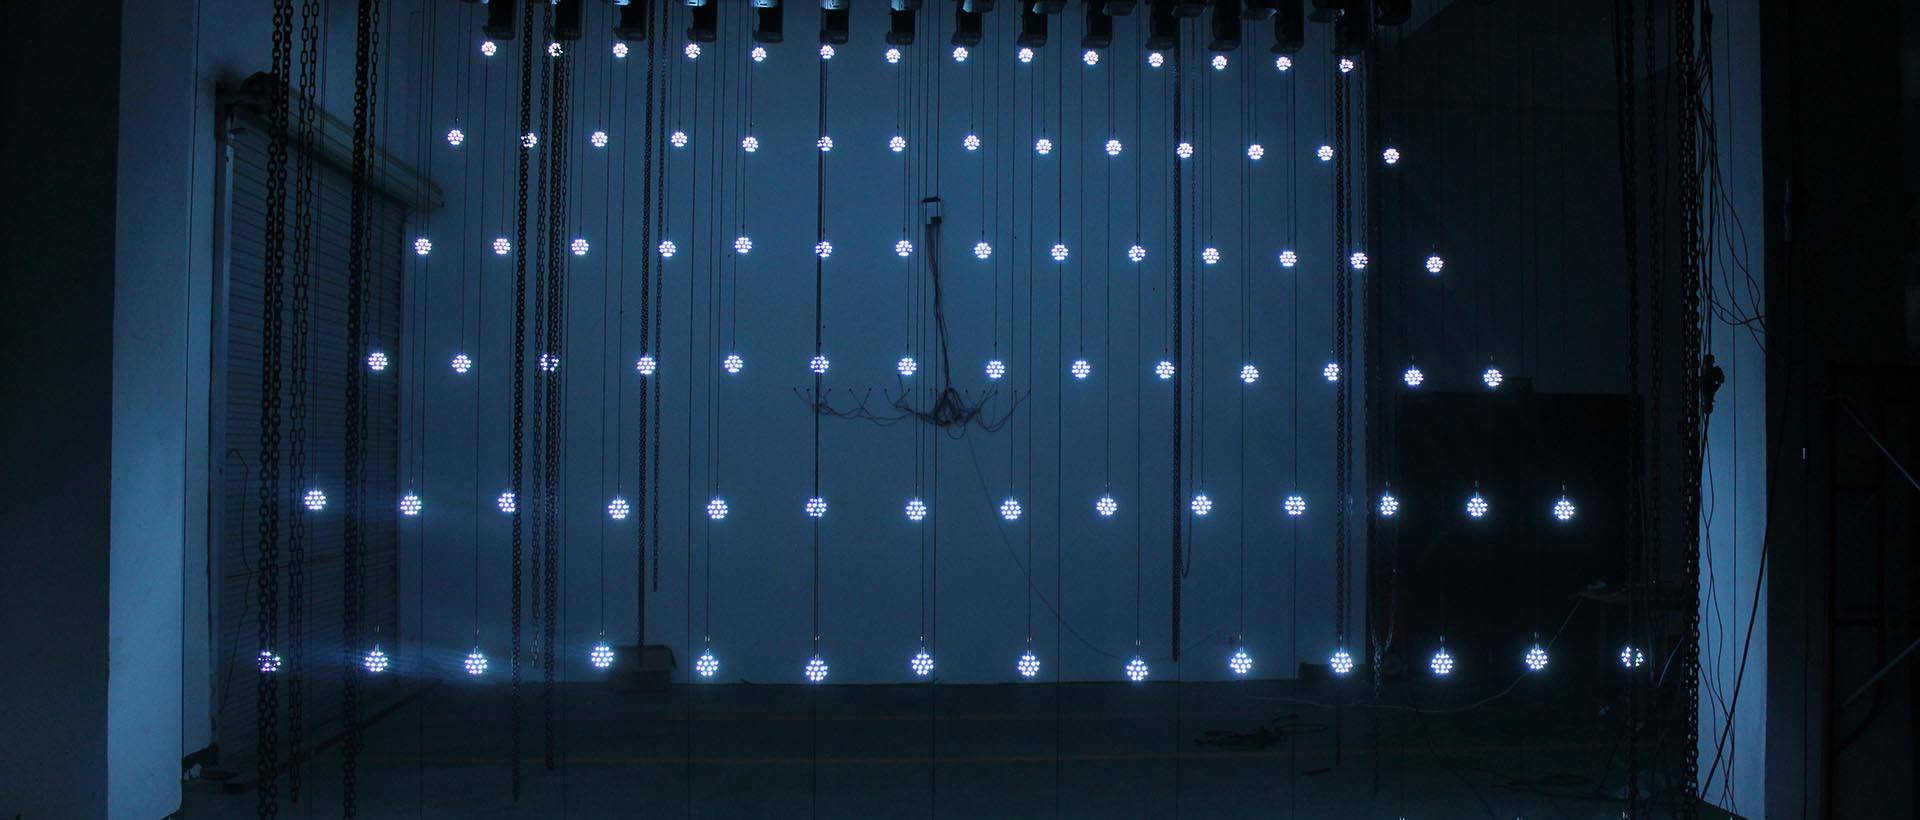 Videoesitys 100 sarjalle kineettisiä LED-minipalloja (2)